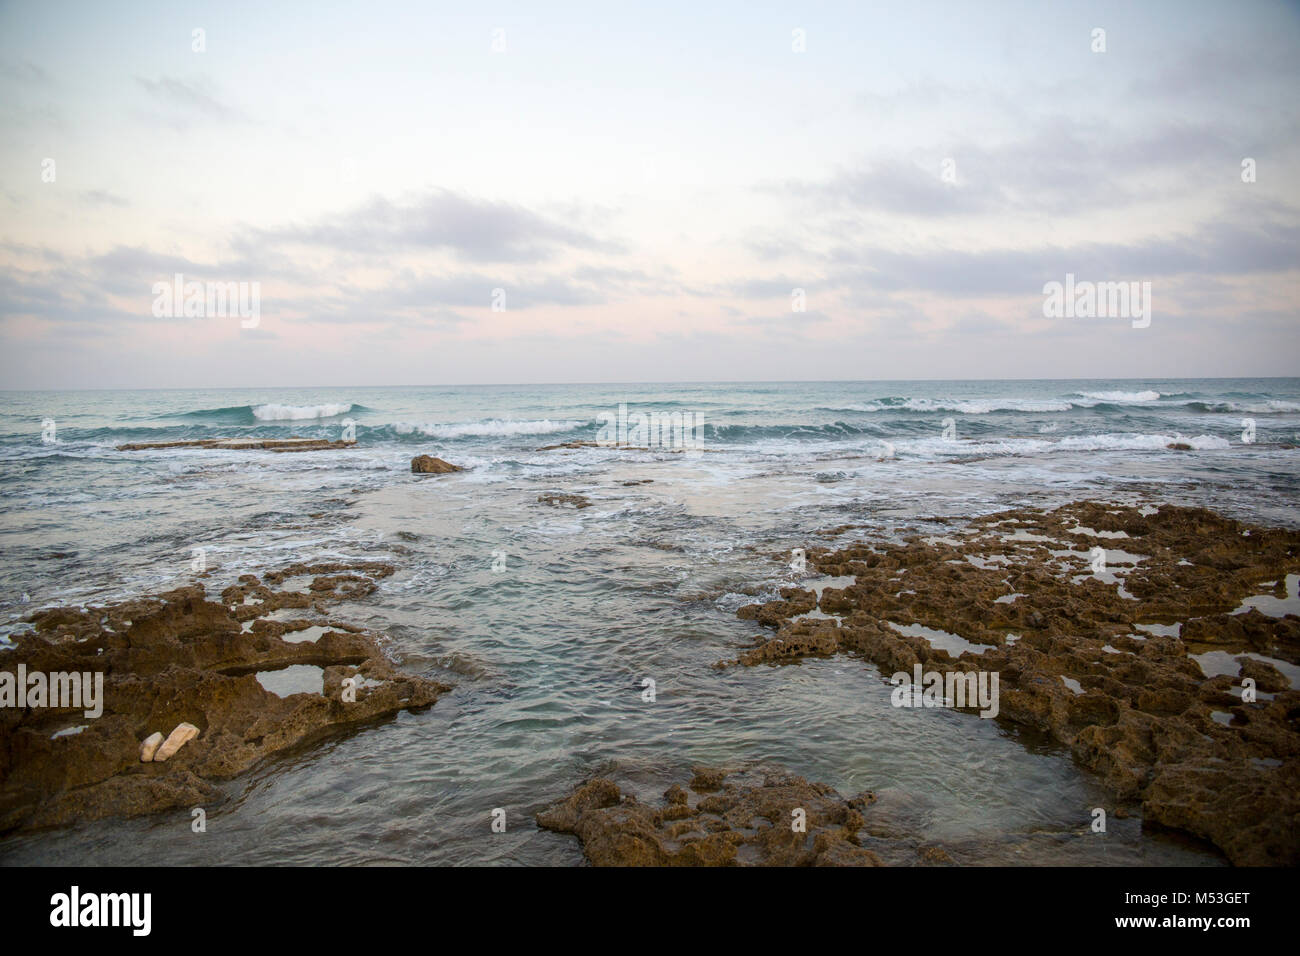 Roches et sable sur les fonds marins photographiés en Israël Banque D'Images